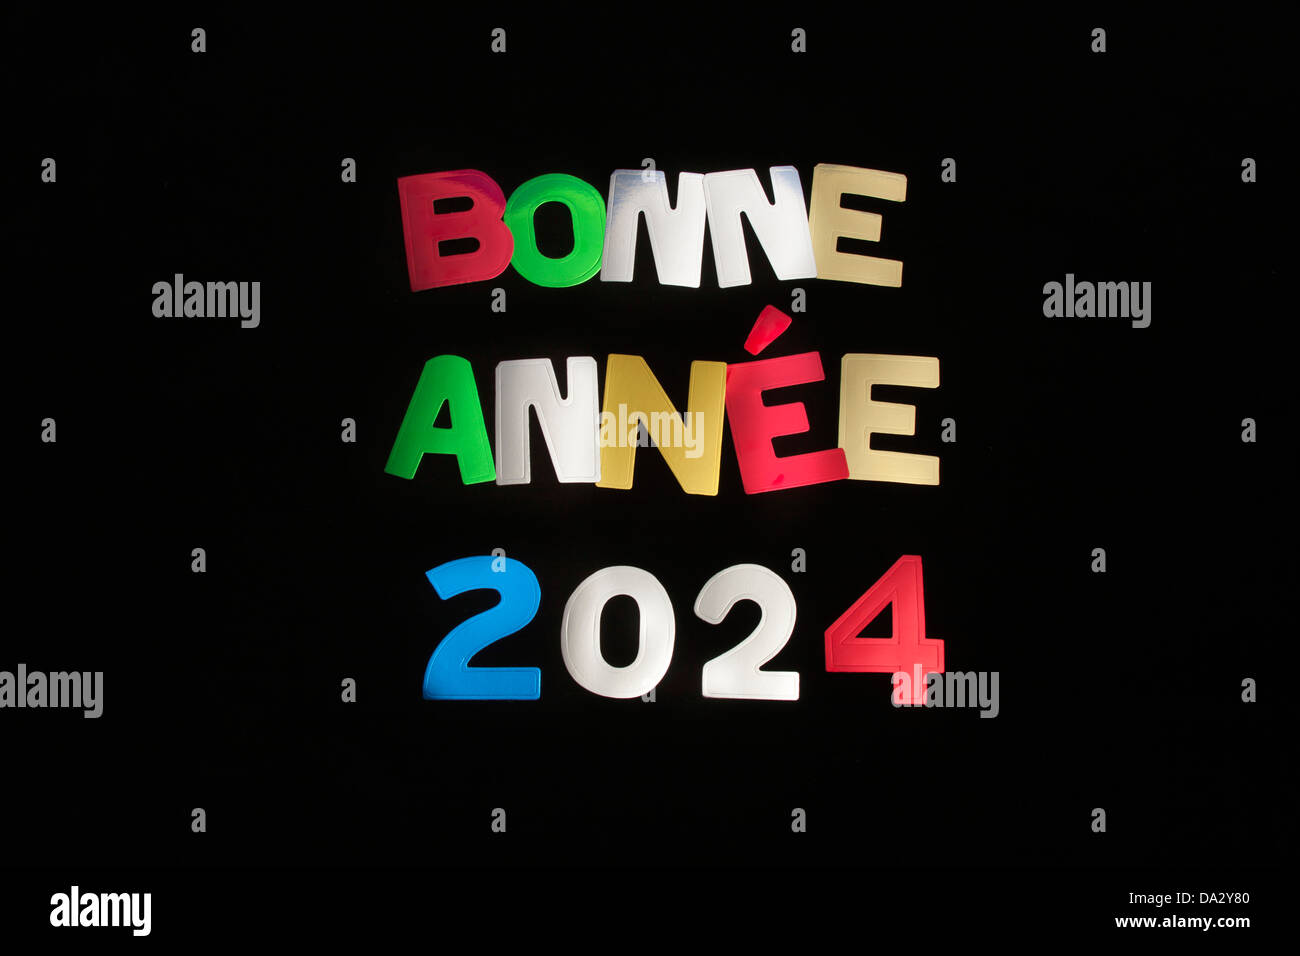 Bonne année 2024 on Vimeo